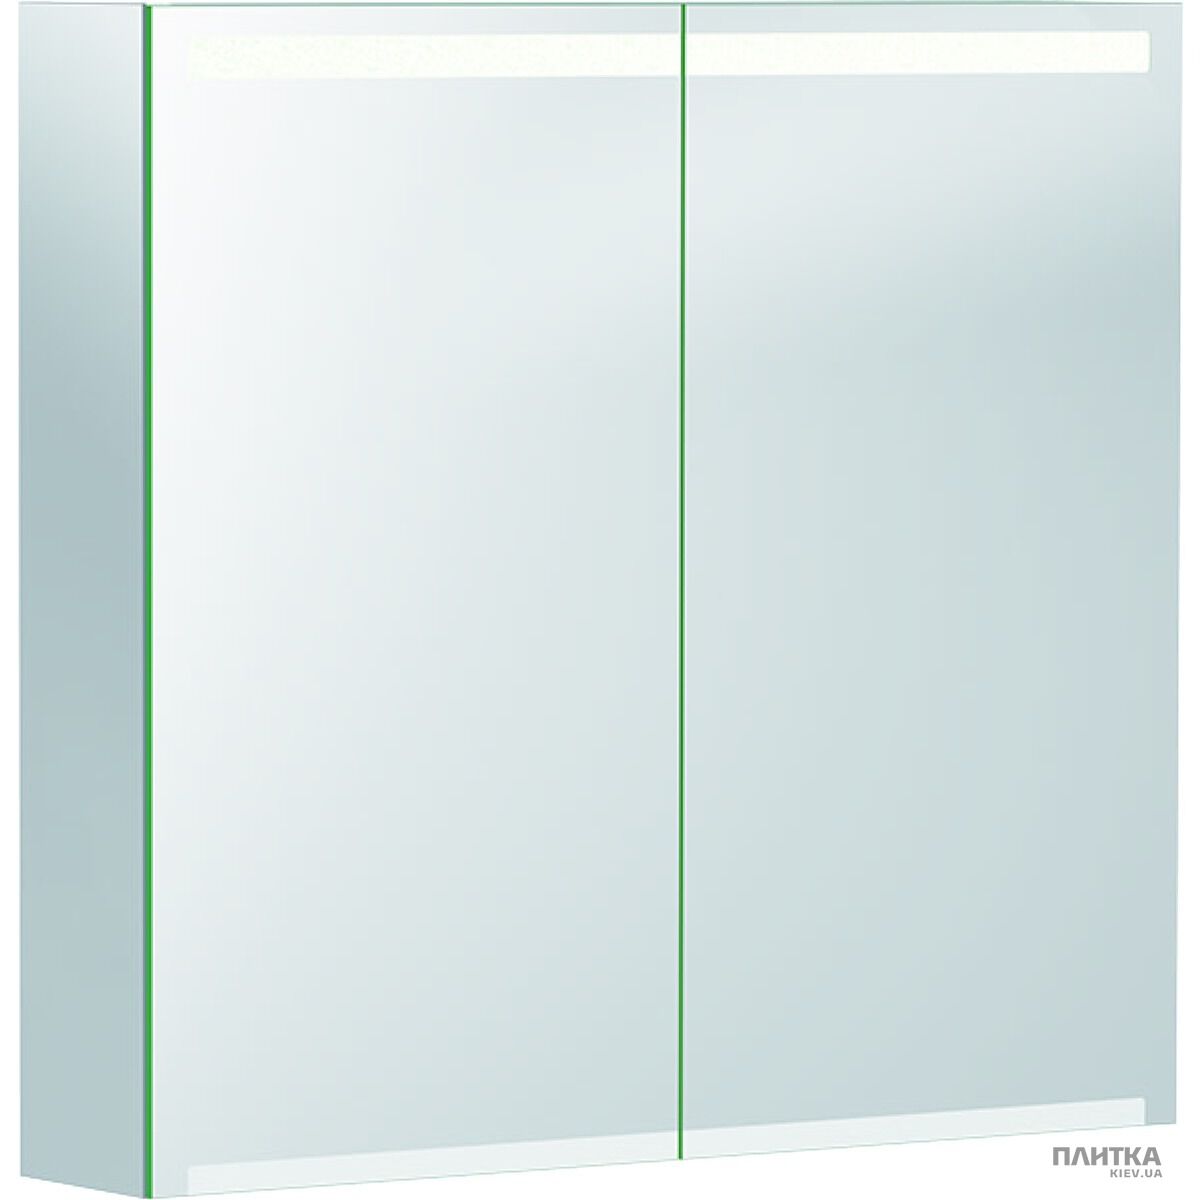 Зеркальный шкаф Geberit Option 500.205.00.1 Option Зеркальный шкафчик 75 см, с подсветкой, с 2 дверцами: корпус зеркальный, дверцы зеркальные снаружи и внутри зеркало